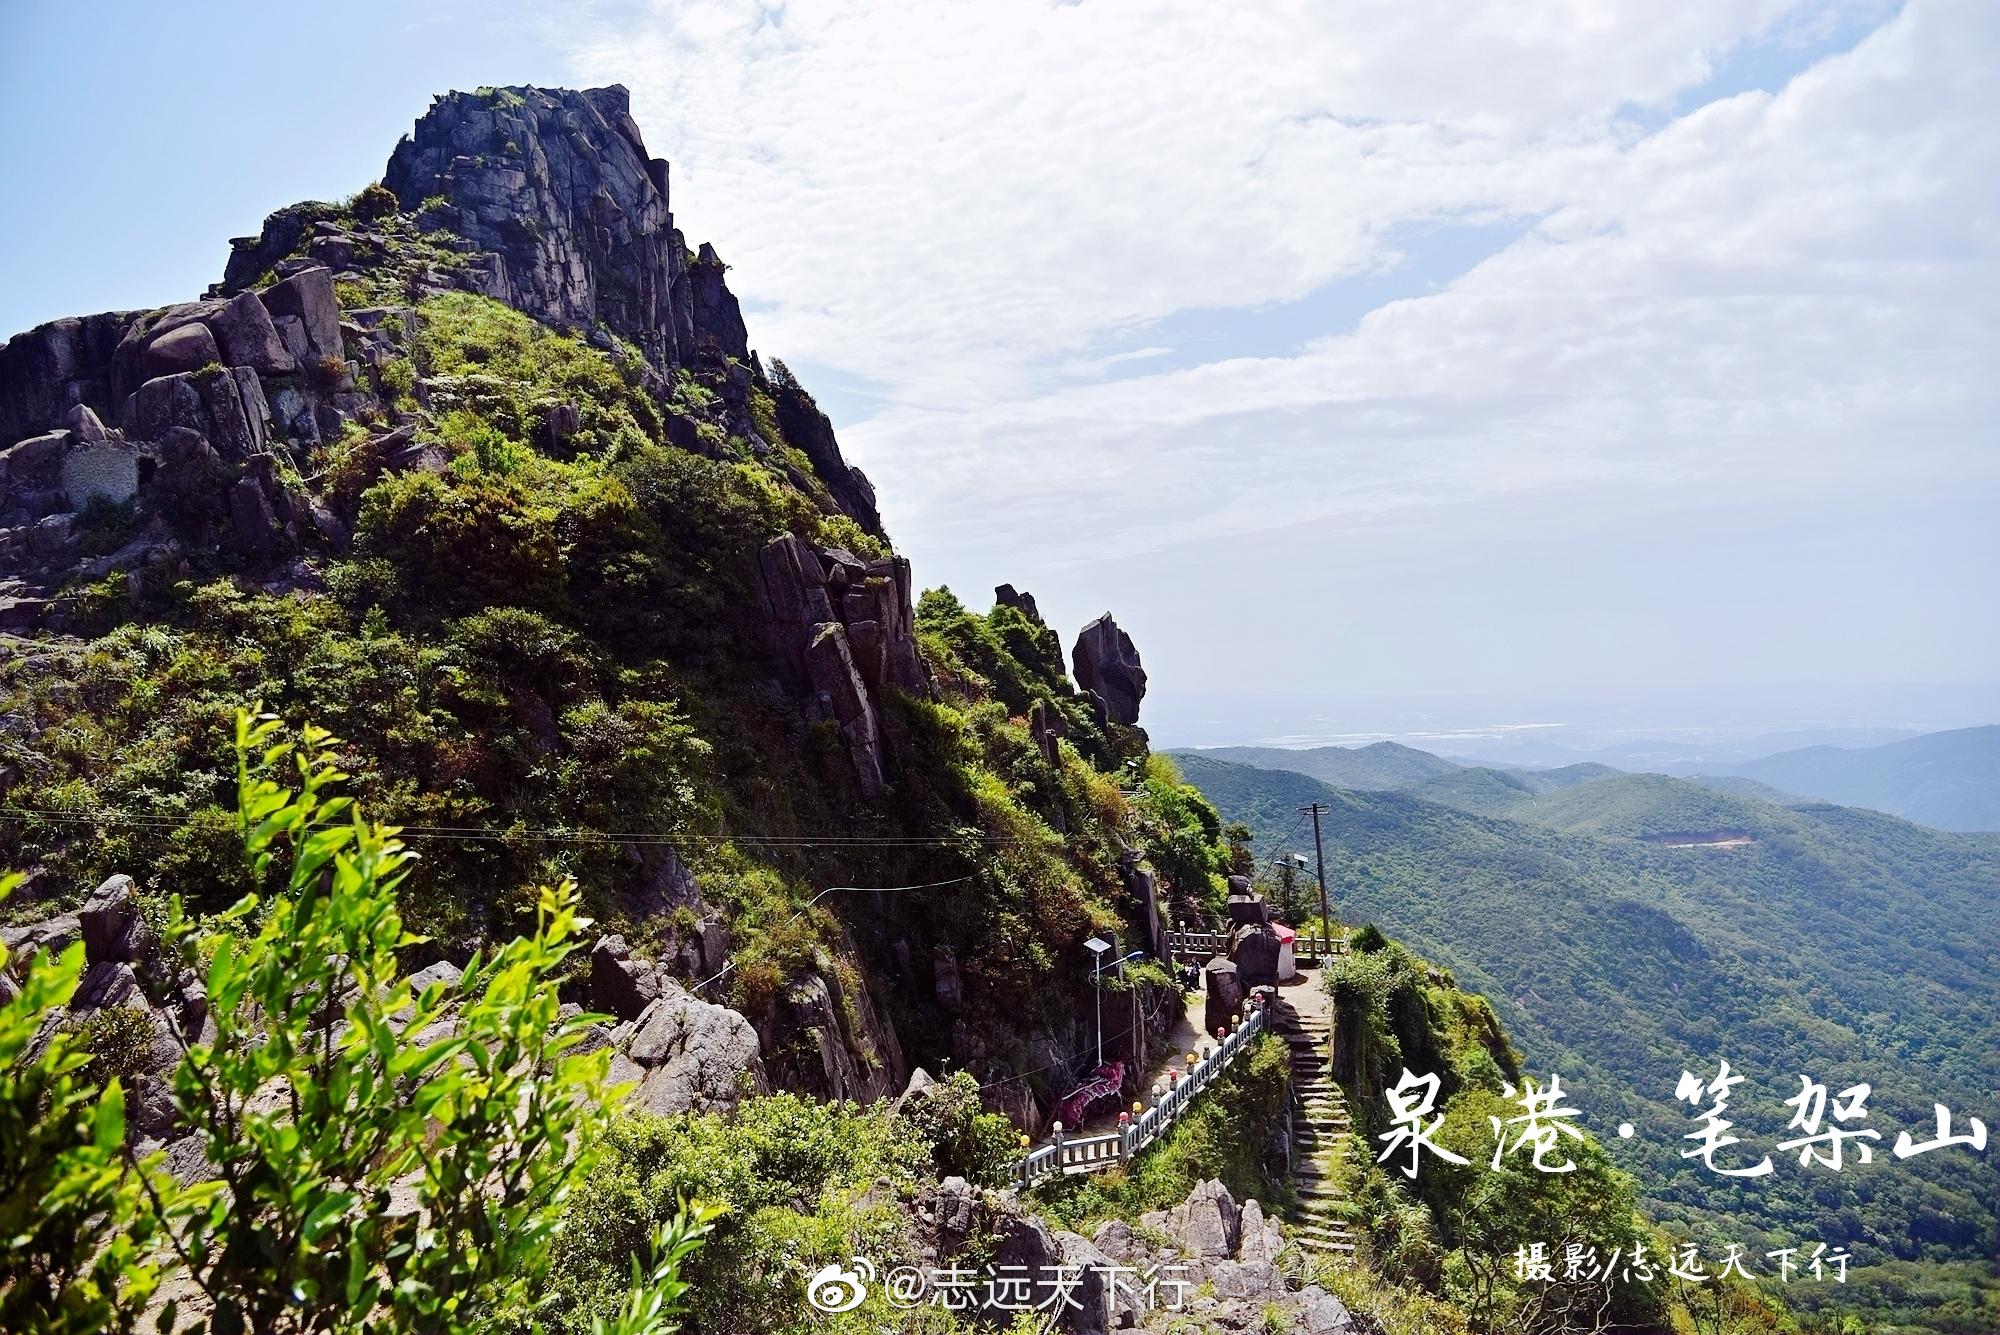 笔架山位于惠安和泉港的交界处，海拔752.3米。山顶三峰相连